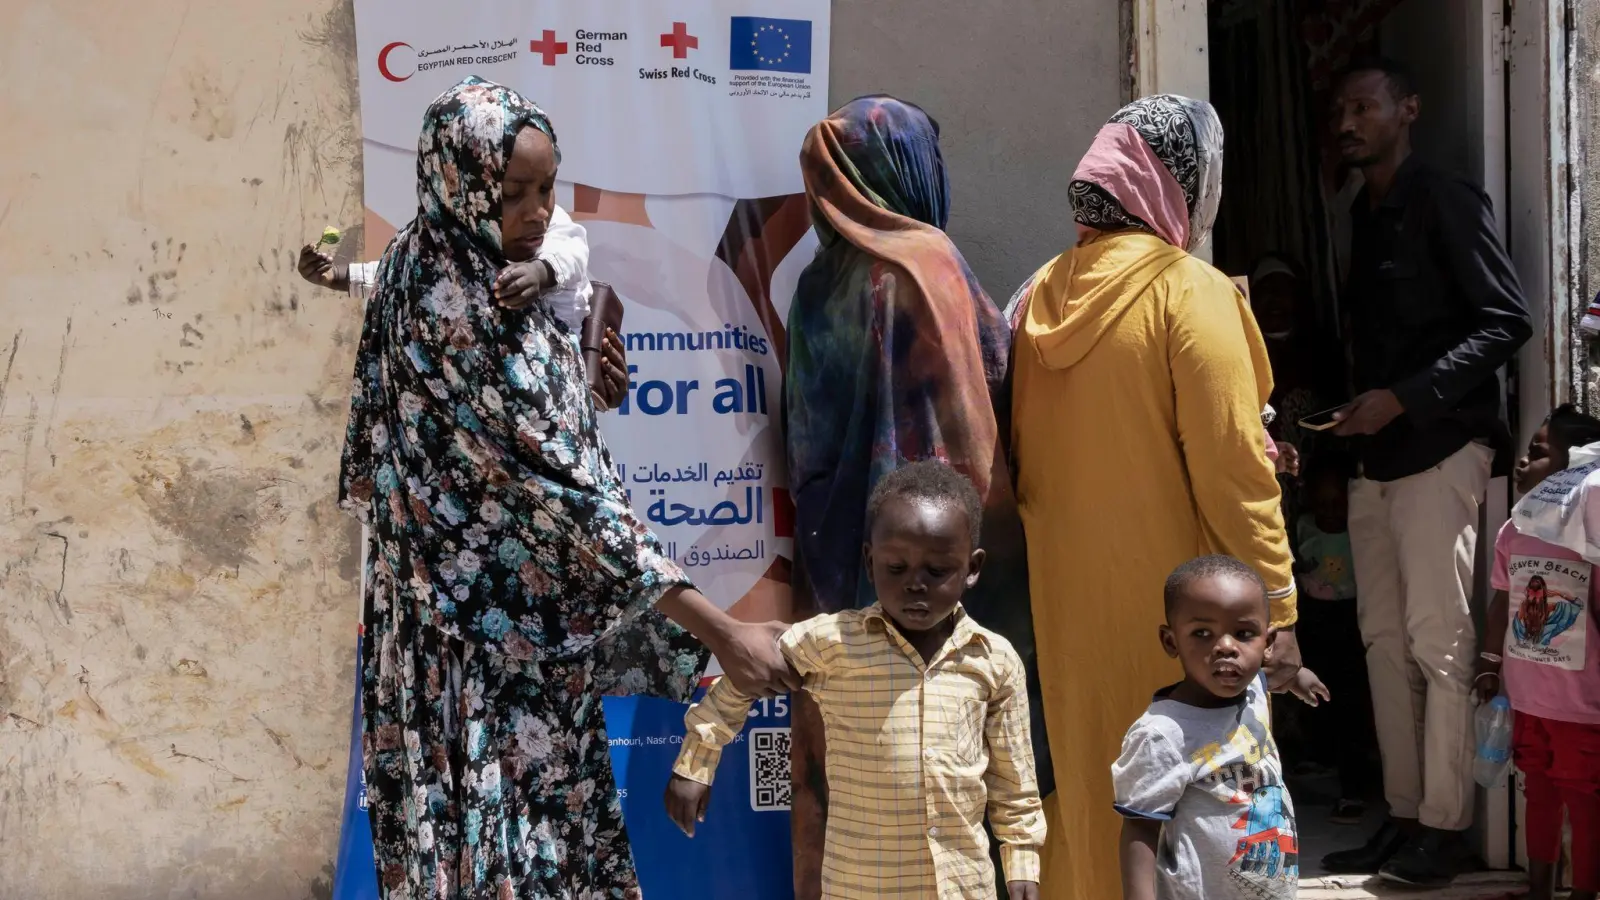 Sudanesische Flüchtlinge vor dem Gelände eines medizinischen Konvois für Neuankömmlinge in Ägypten. (Foto: Lobna Tarek/dpa)